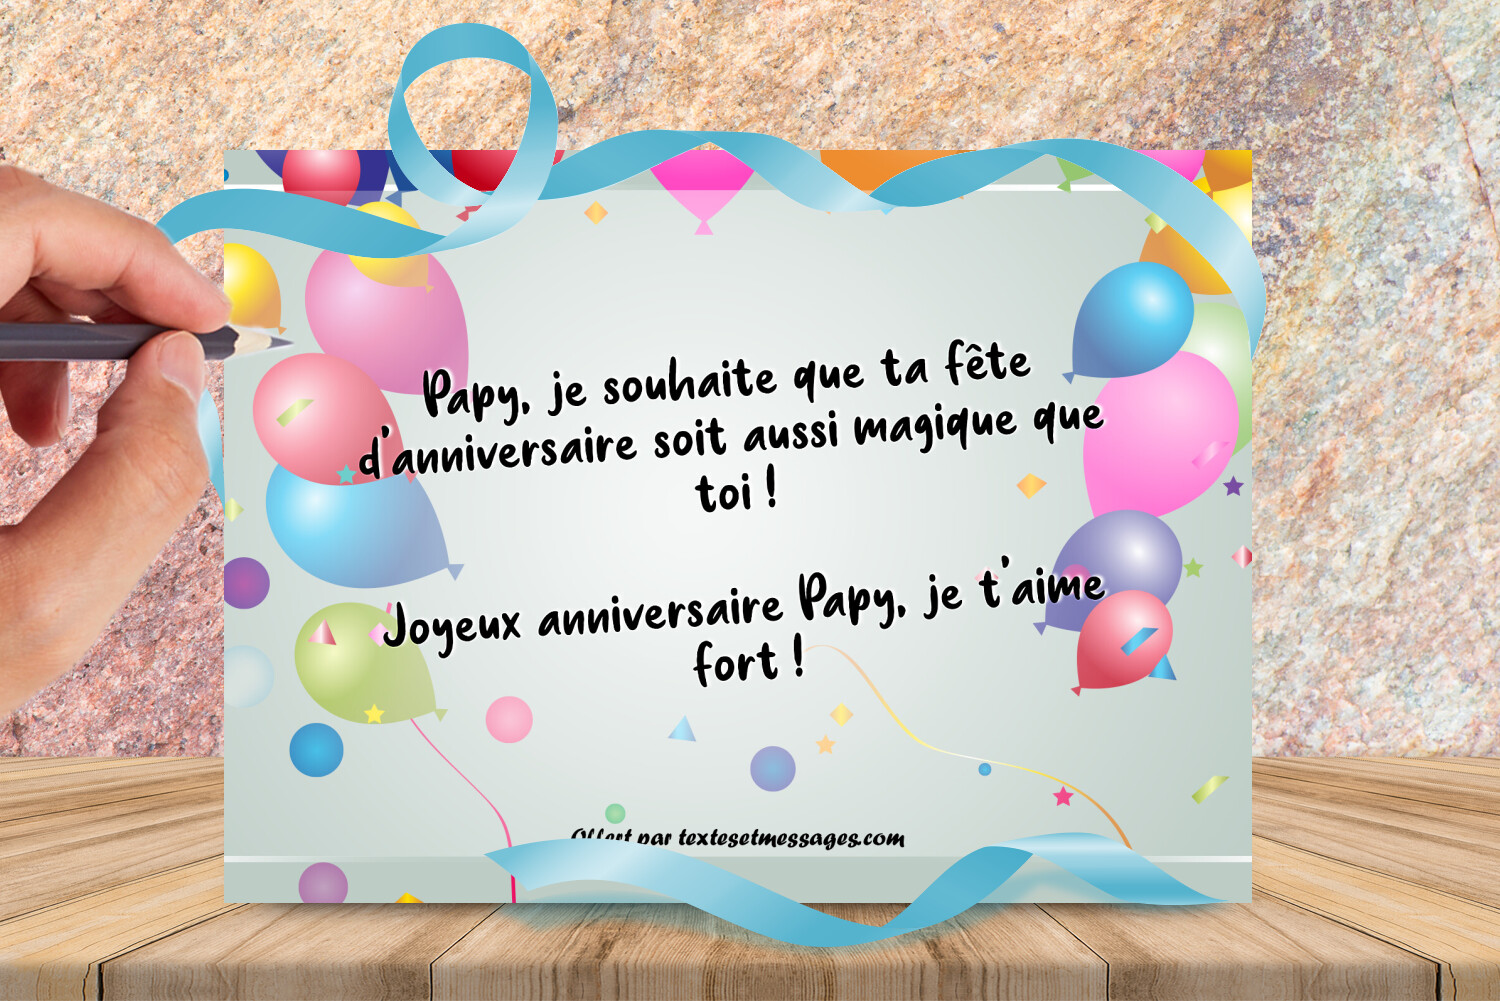 Textes et messages anniversaire grand-père (papy) : Texte joyeux anniversaire papy, je t'aime fort !